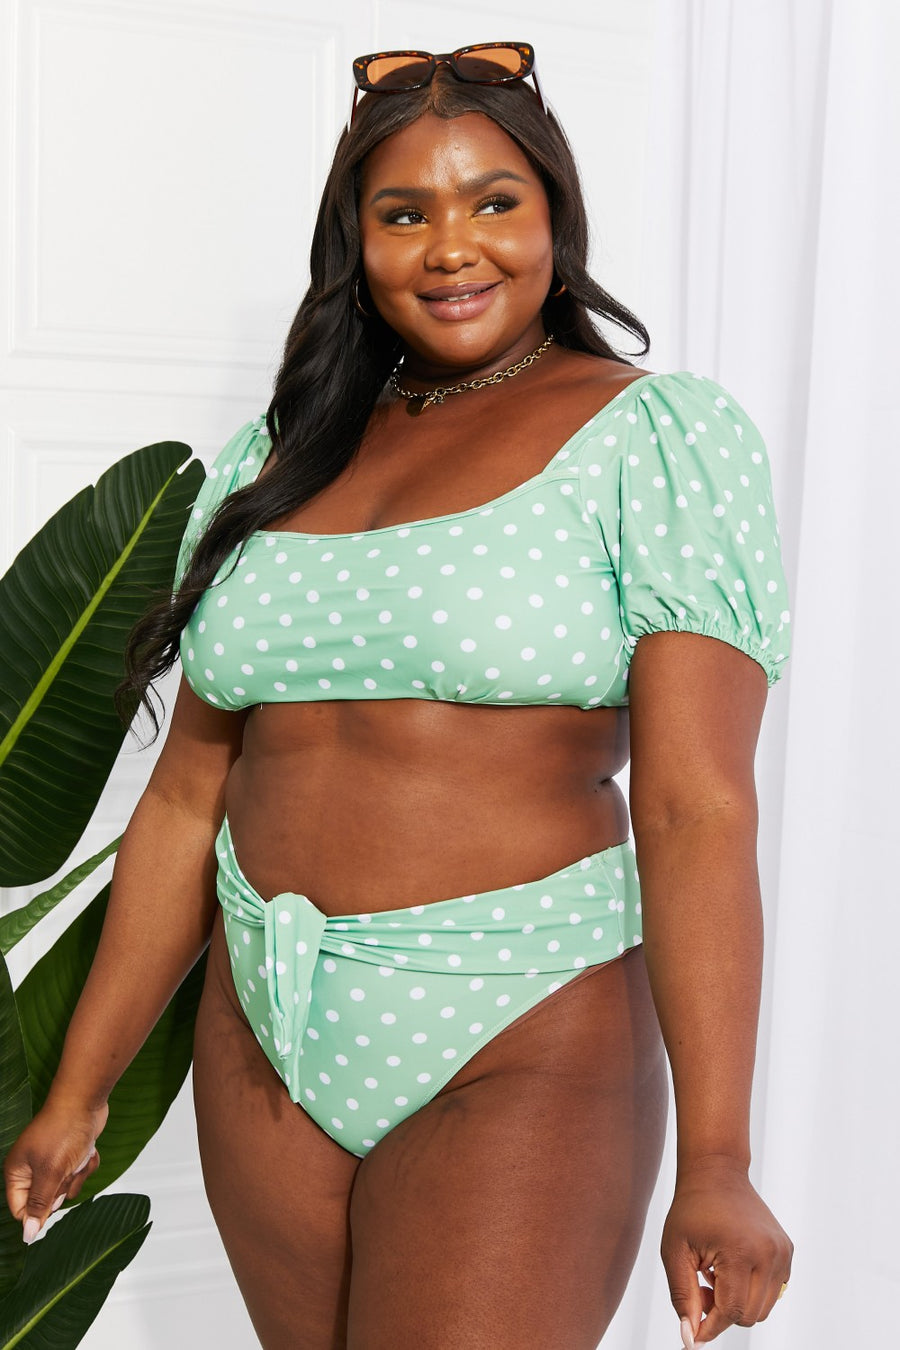 Marina West Swim Vacay Ready Puff Sleeve Bikini in Gum Leaf (S-2XL)